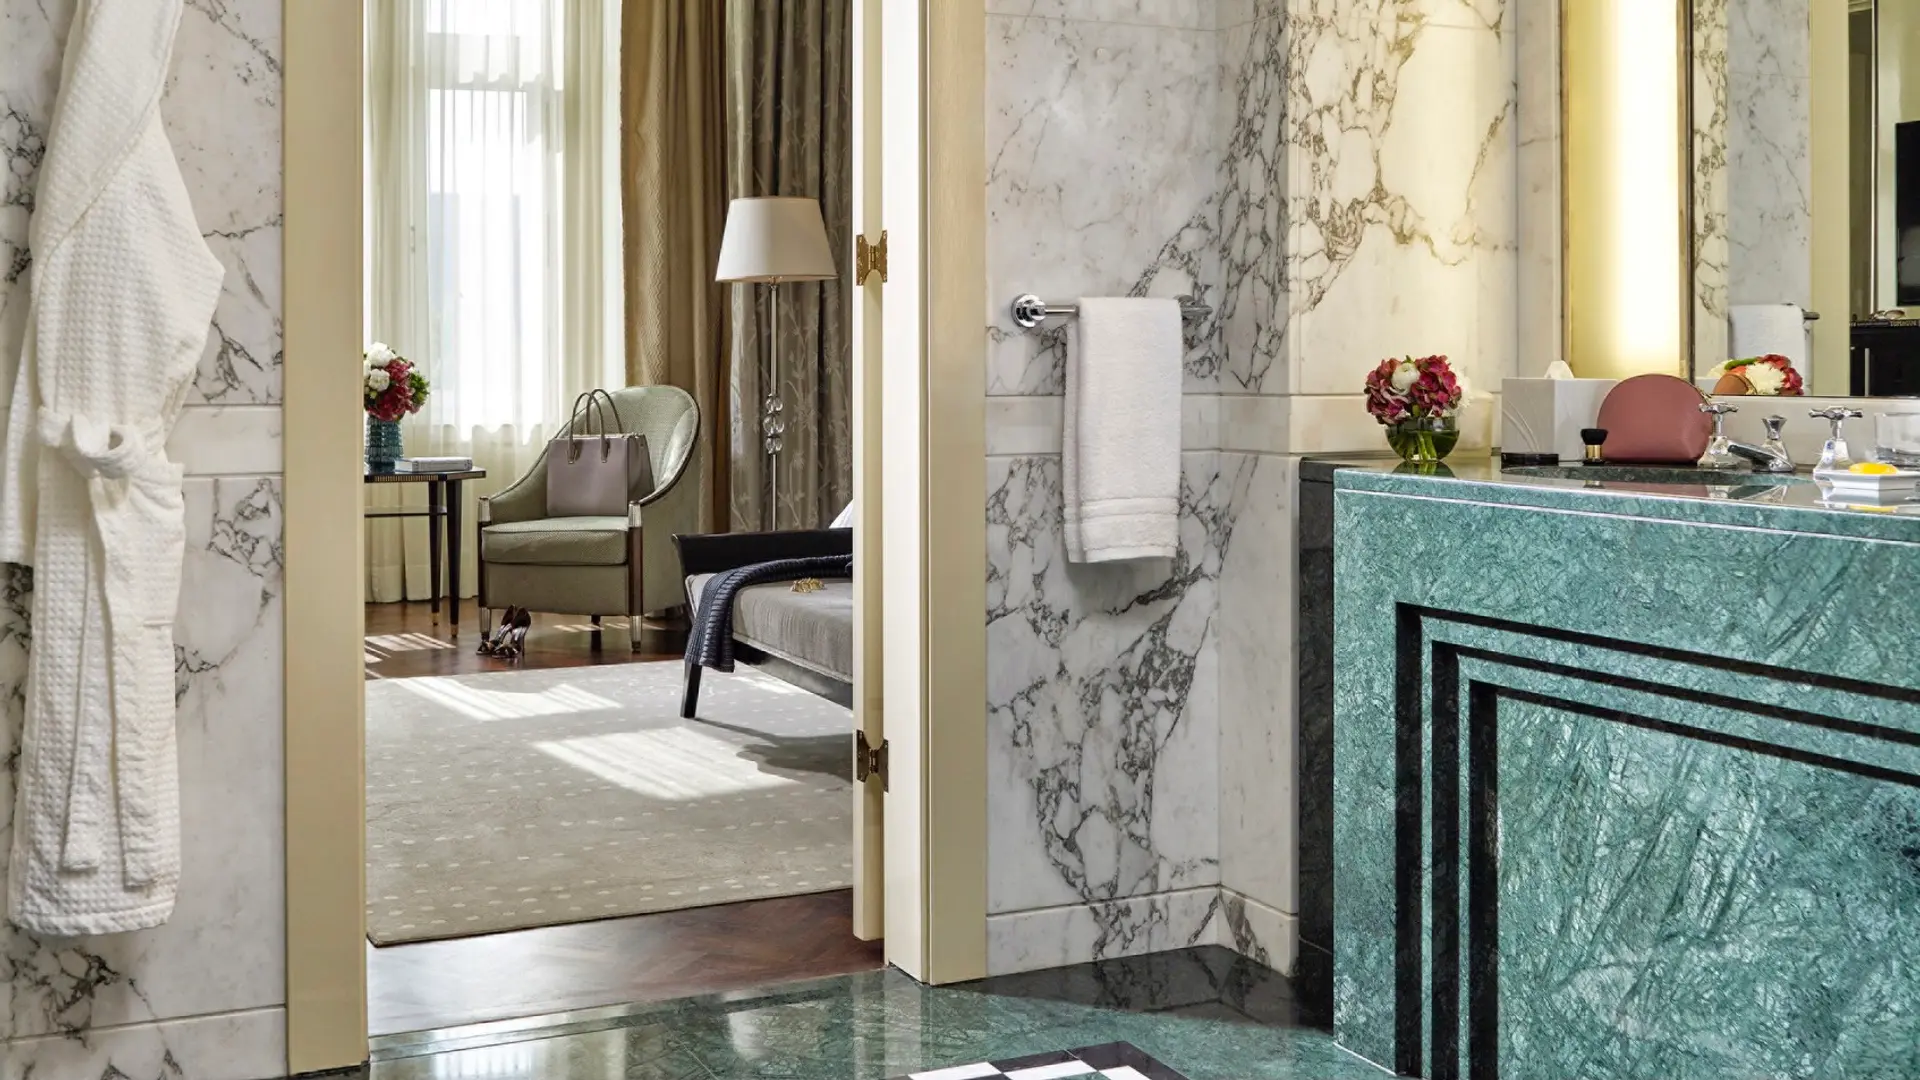 Hotel review Accommodation' - Four Seasons Hotel Gresham Palace Budapest - 2